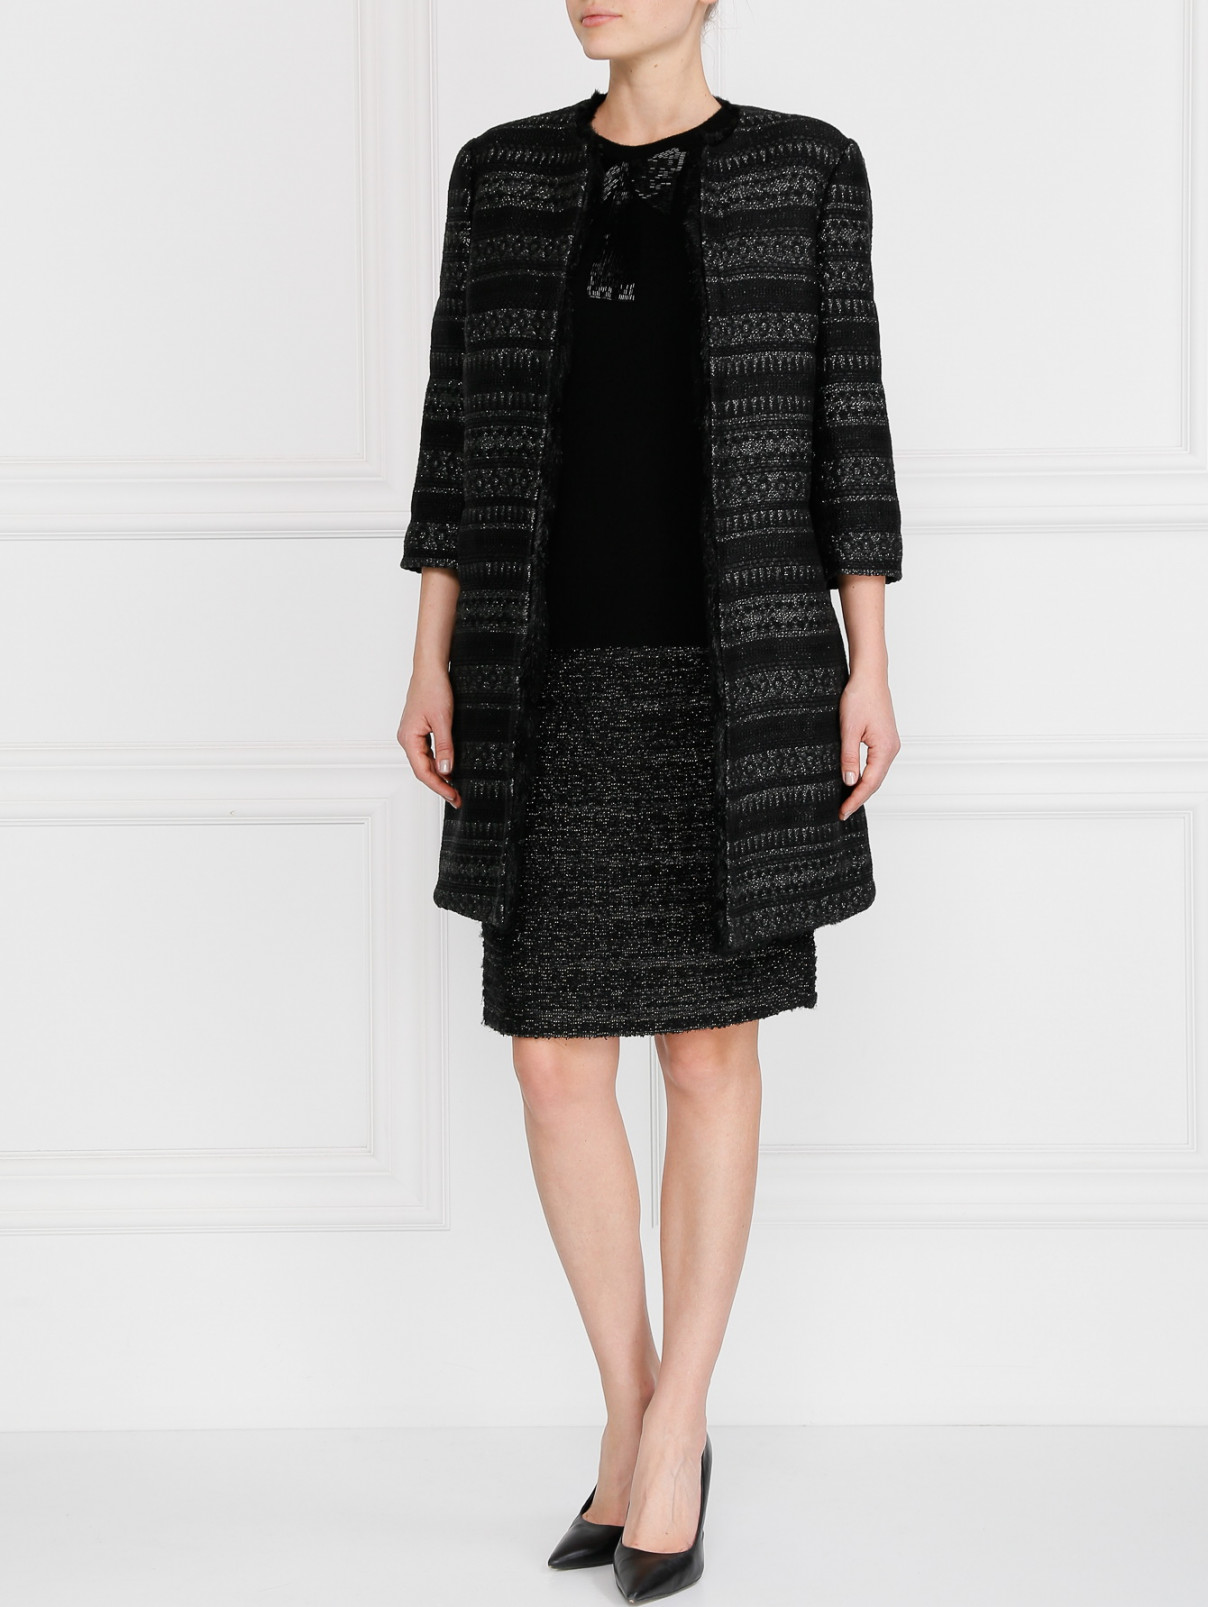 Утепленное пальто с рукавами 3/4 Vanda Catucci  –  Модель Общий вид  – Цвет:  Черный